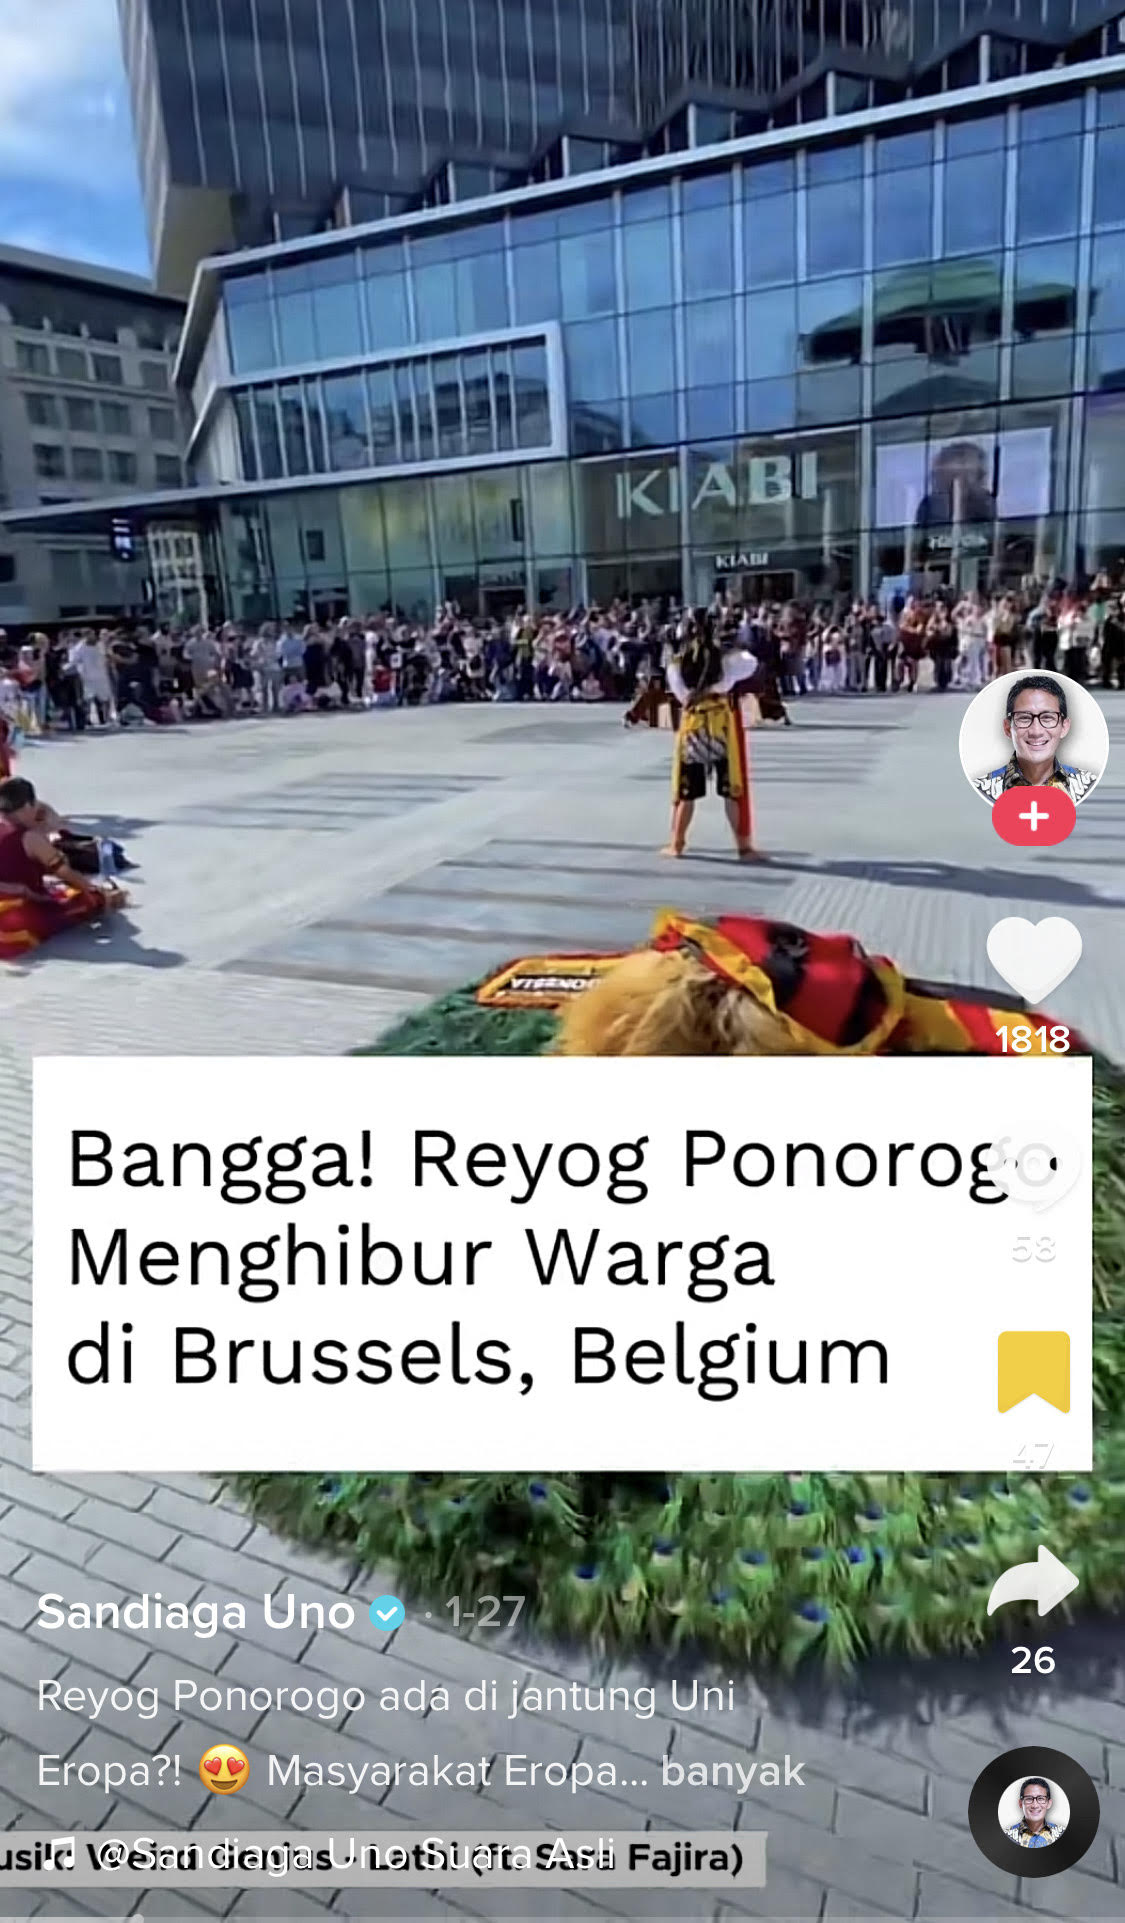 Sandiaga Uno memposting pertunjukan Reyog Ponorogo di Brussels, Belgia